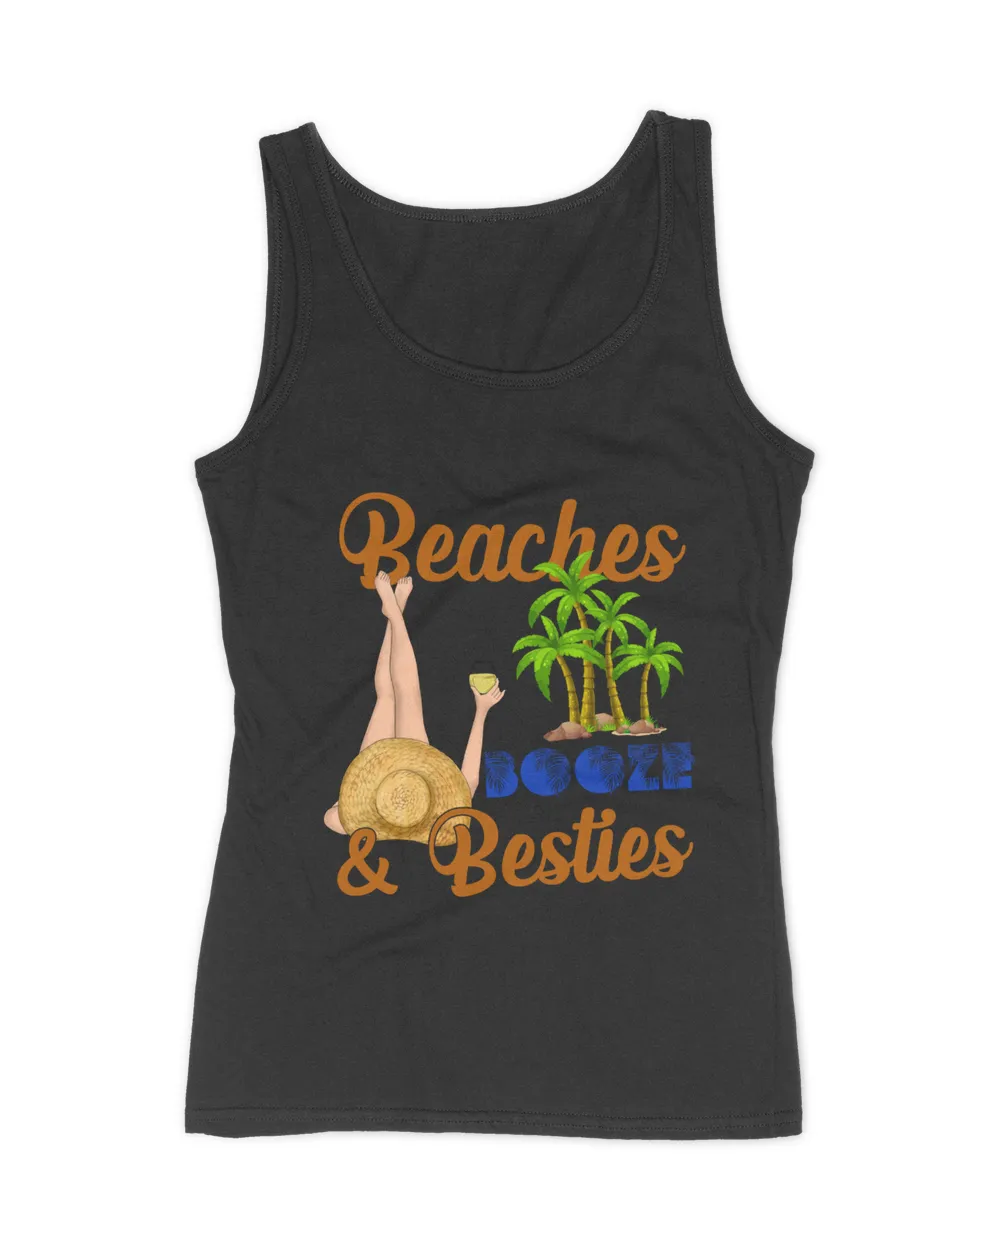 RD Beaches Booze And Besties Shirt, Beach Vacation Shirt, Girls Beach Trip Shirt, Summer Vacation